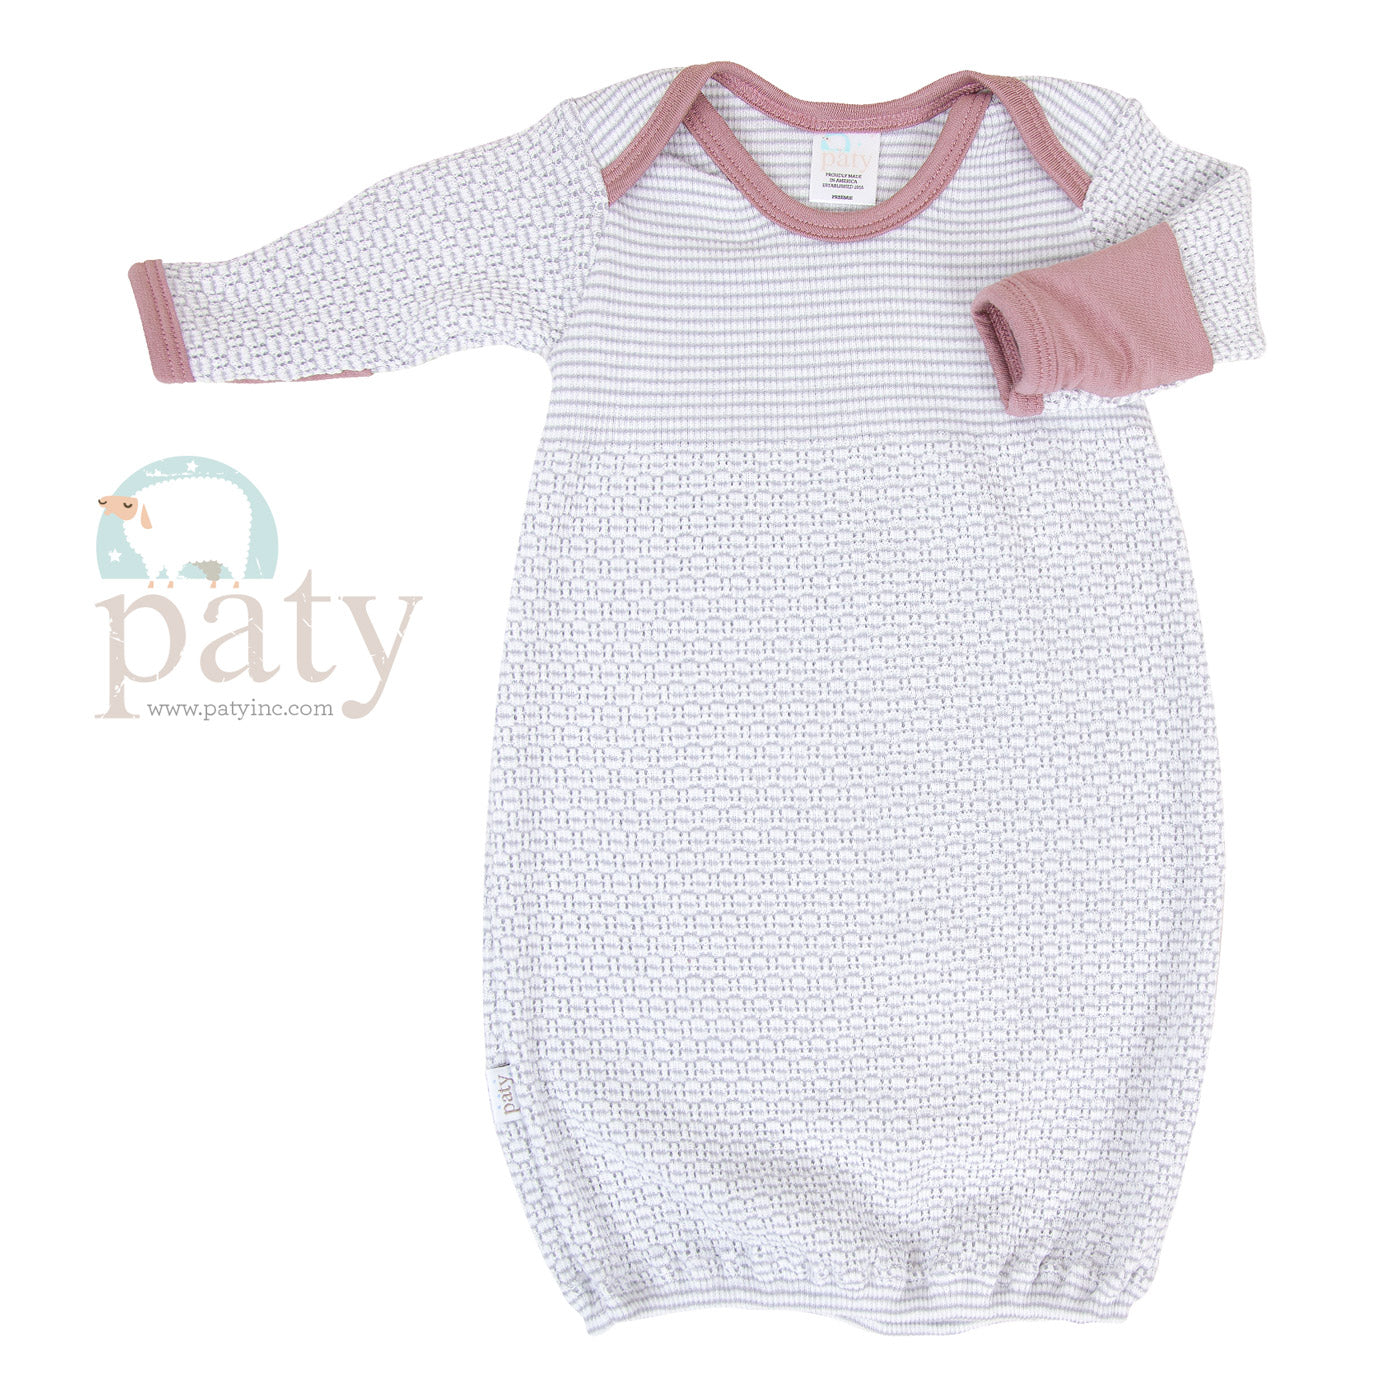 Solid Color Paty Knit LS Lap Shoulder Gown w/ Cotton Trim options #215J